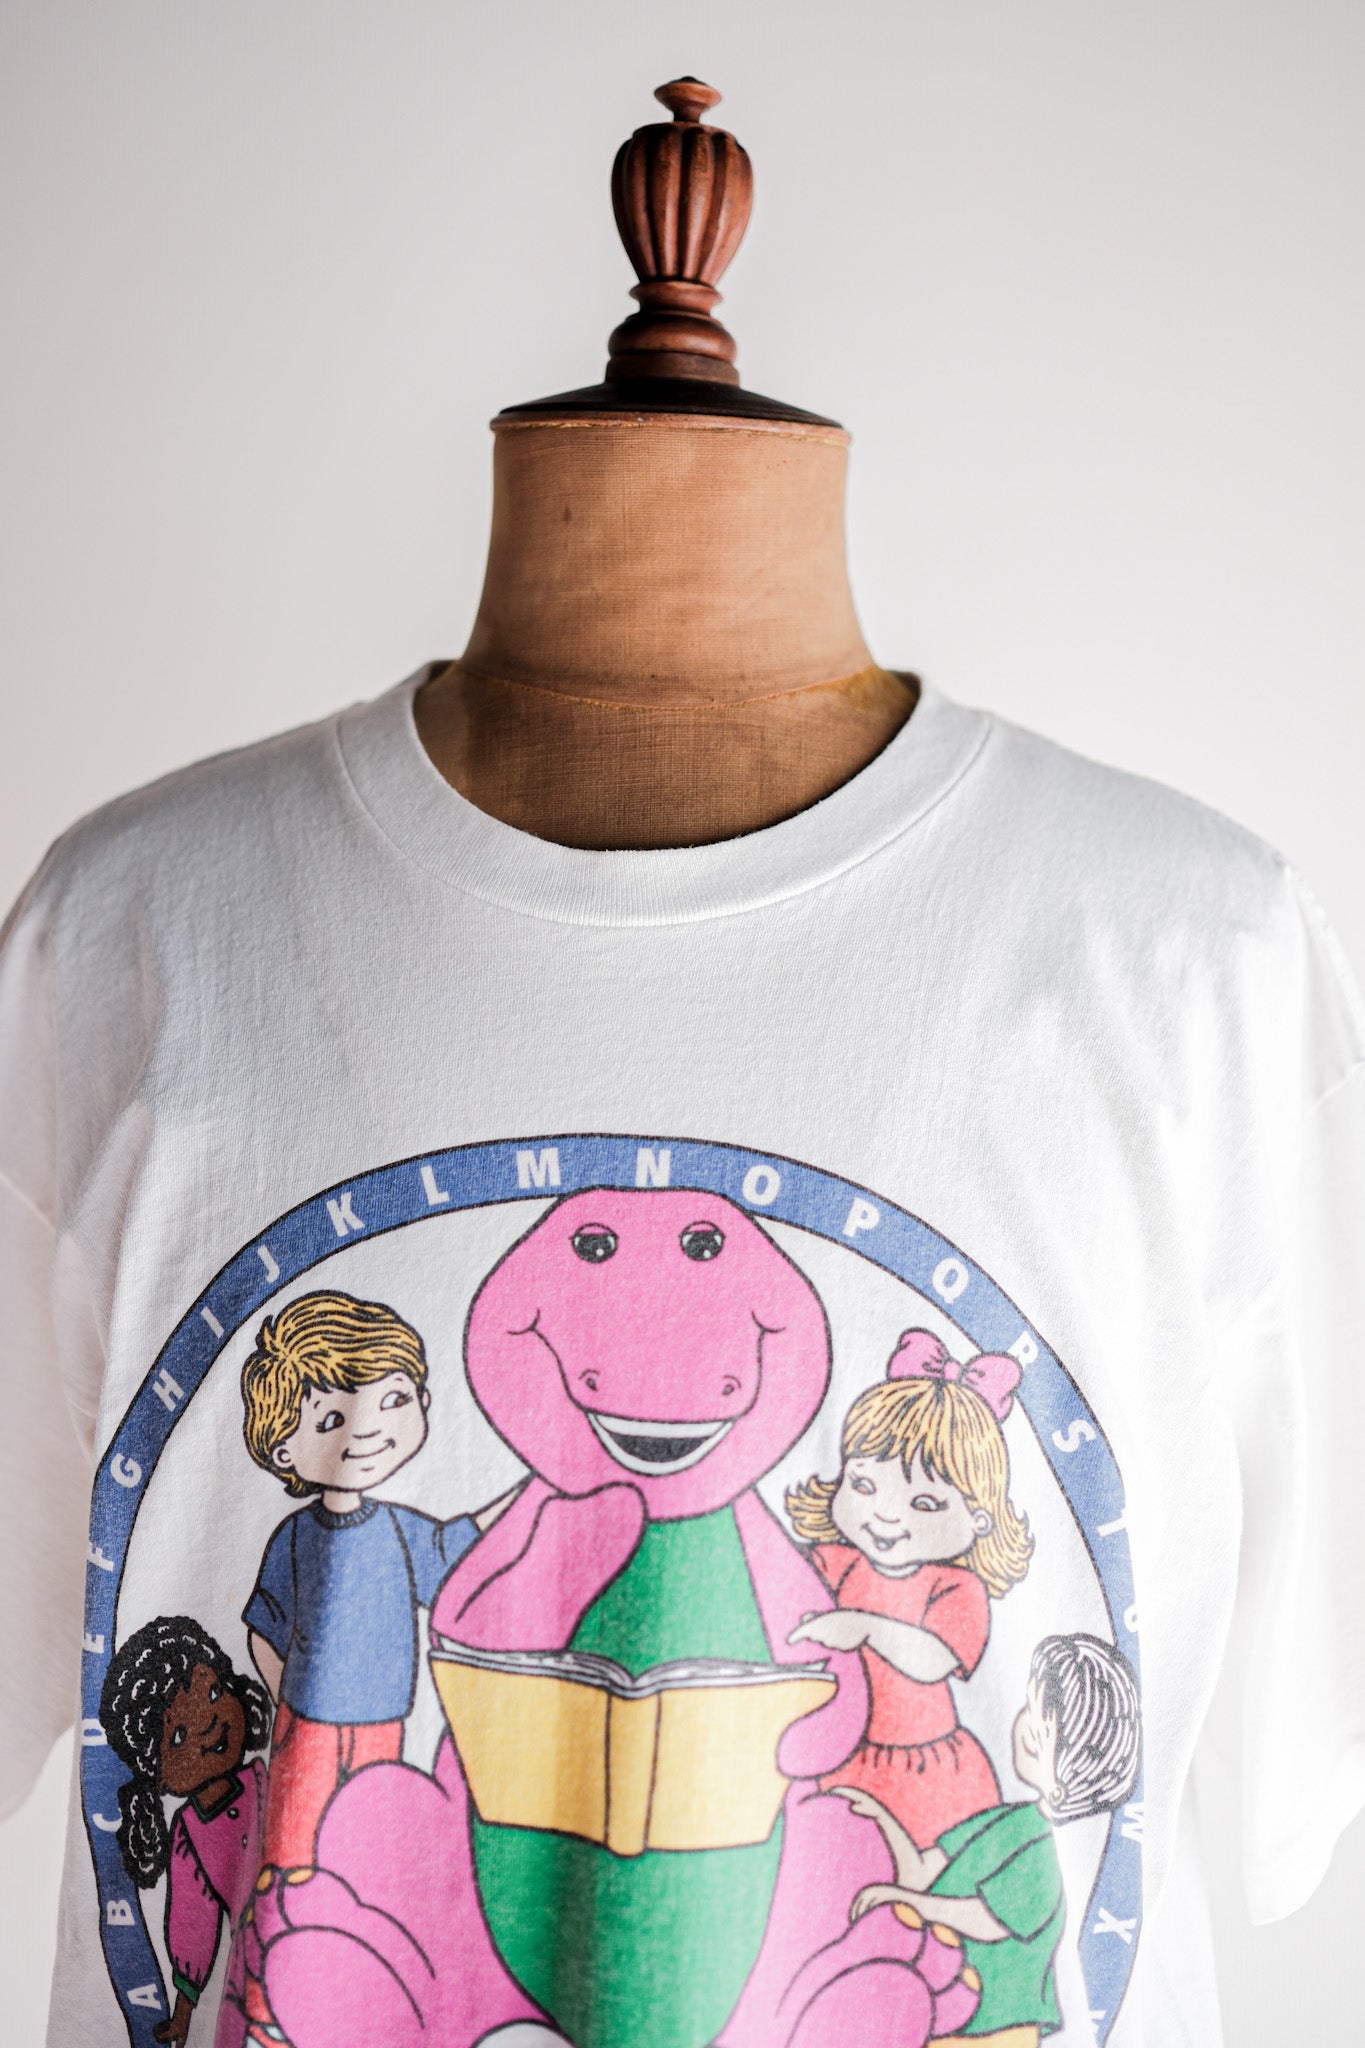 [~ 90 년대] 빈티지 TV 프린트 티셔츠 크기 .XL "Barney & Friends" "미국에서 만든"